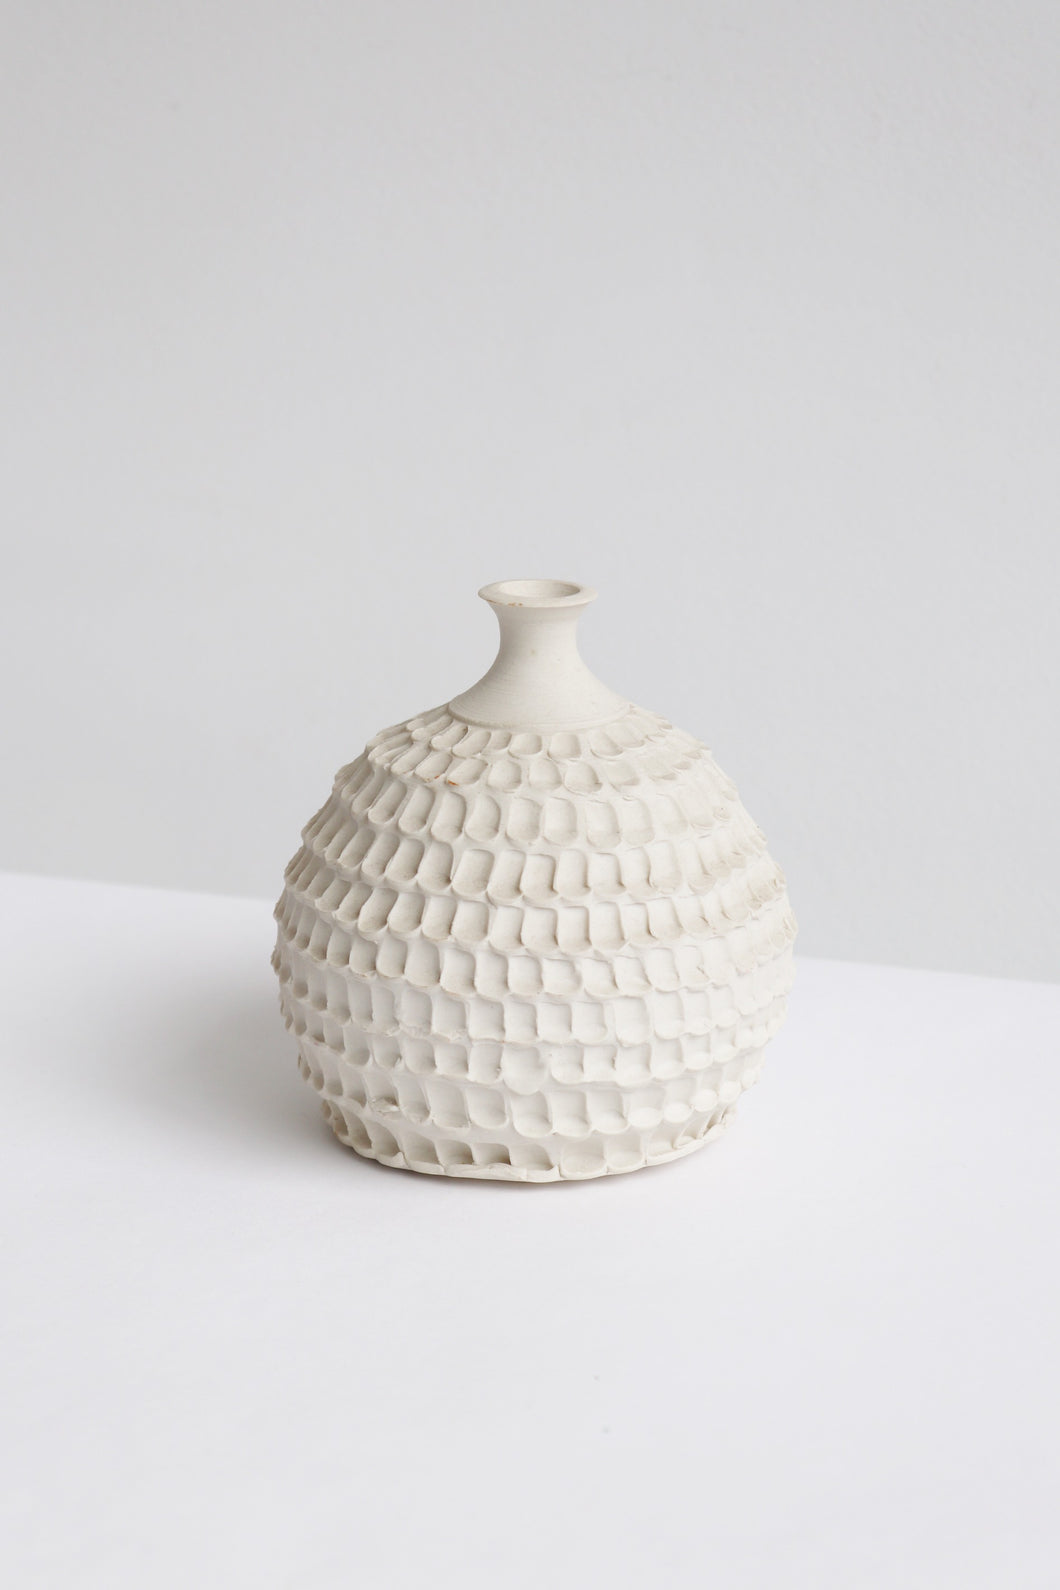 Studio Pottery Textured Weedpot